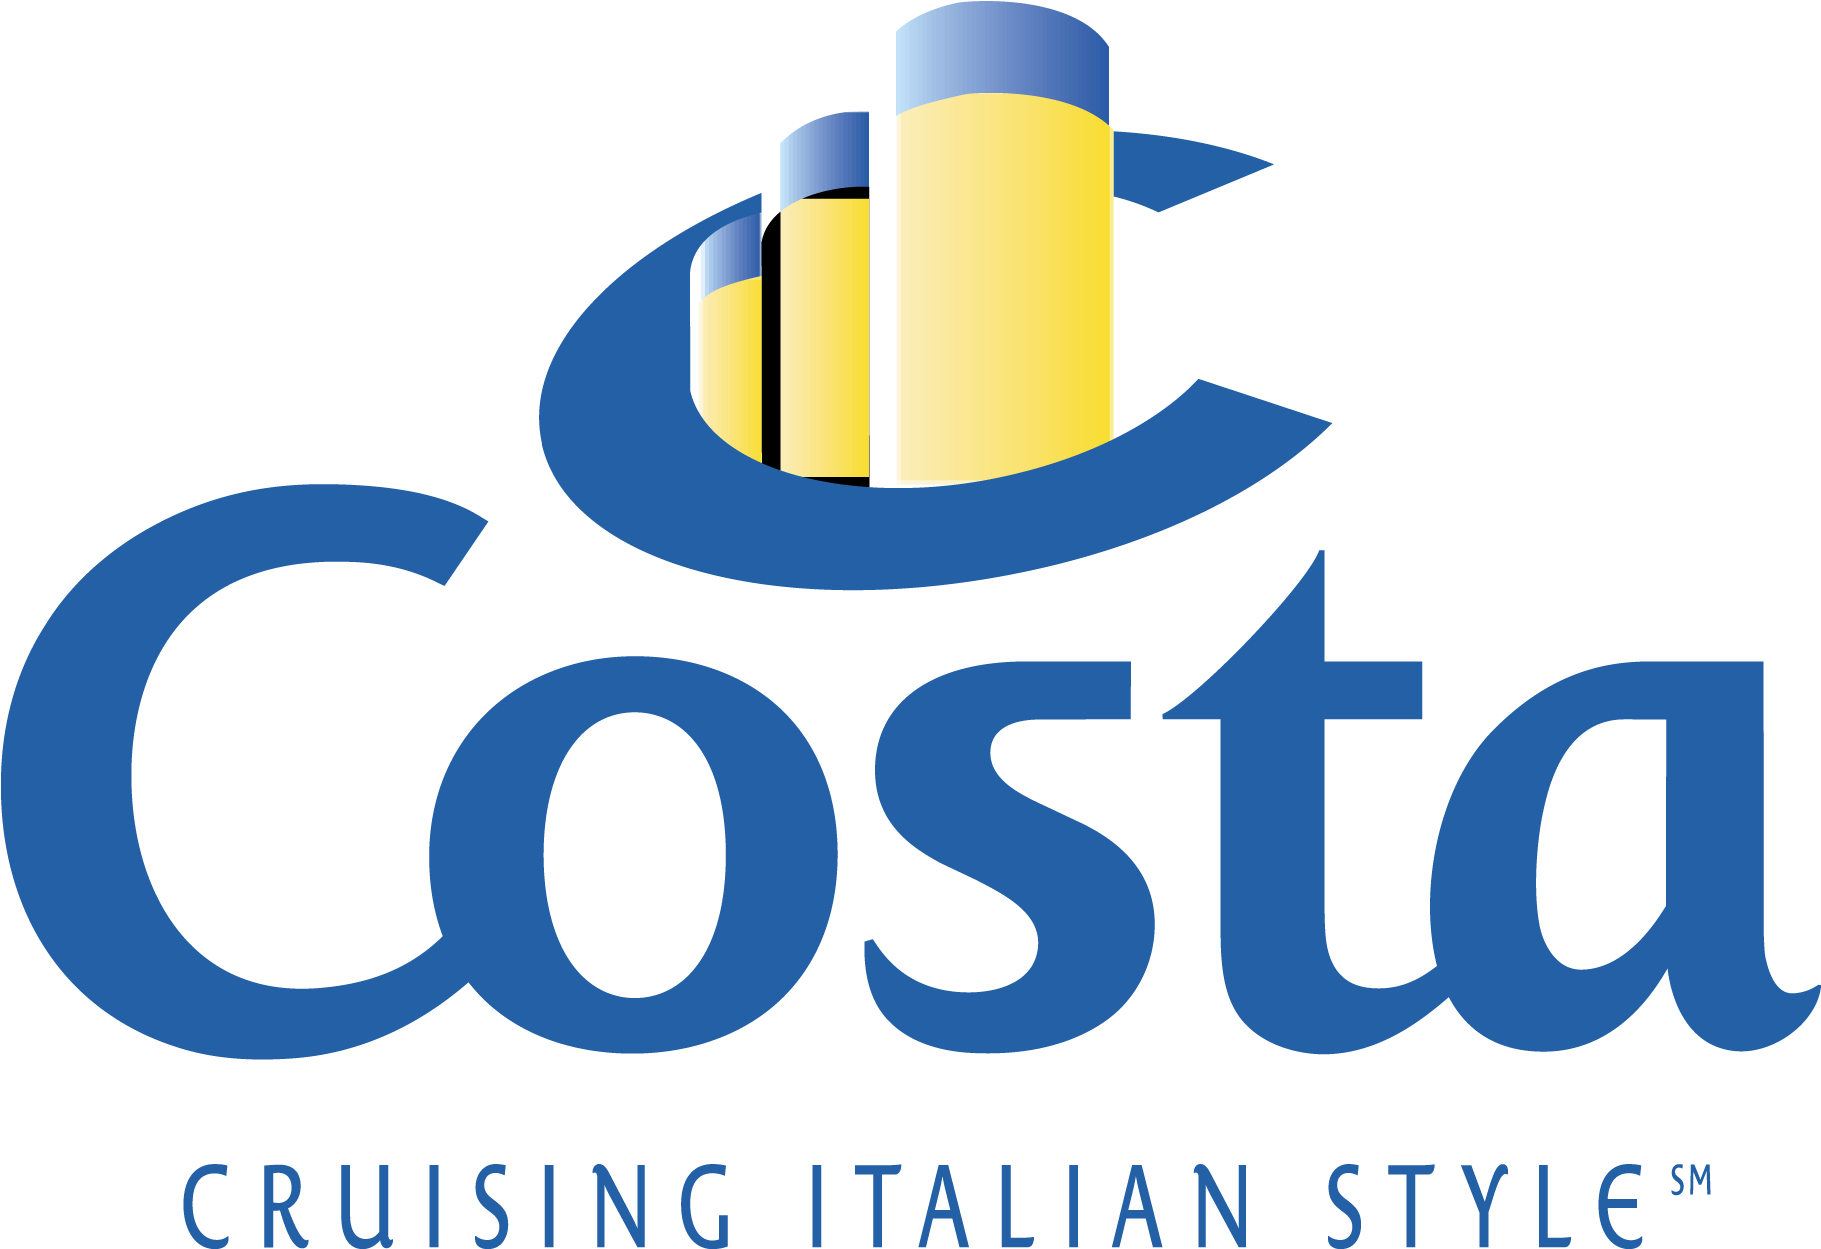 Costa Logo - Costa Crociere Logo Png Clipart (2000x1362), Png Download